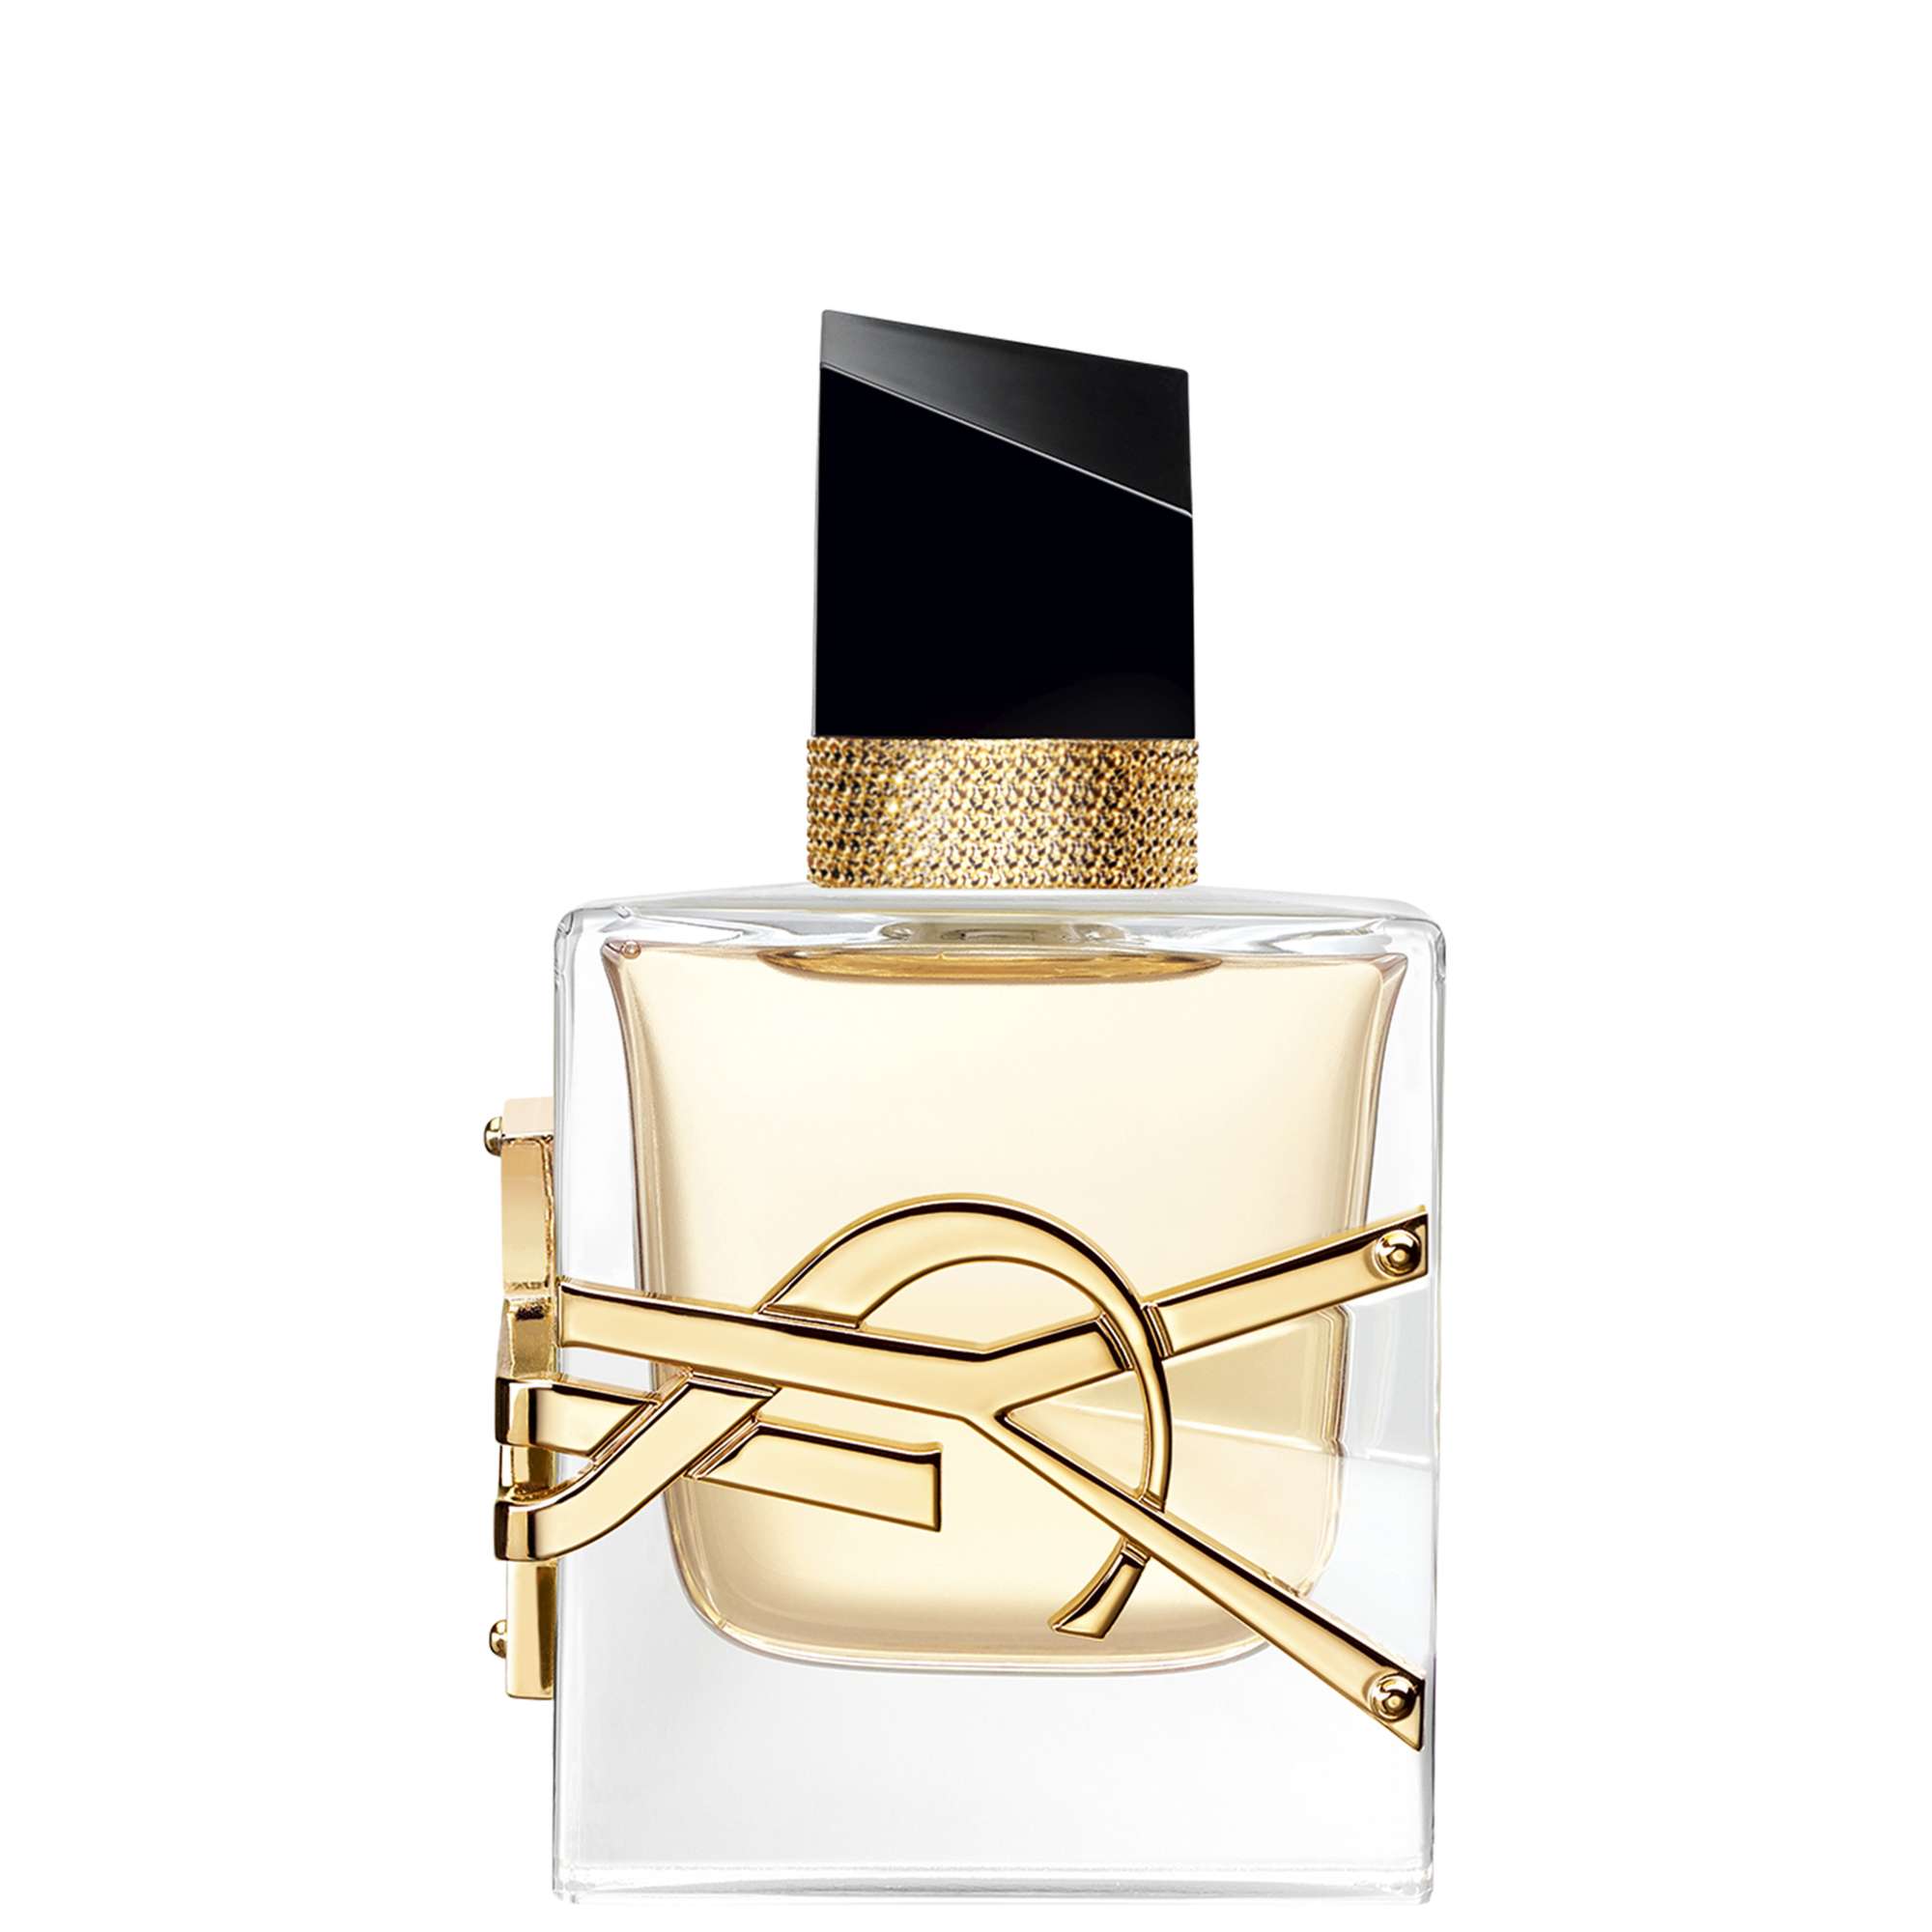 Photos - Women's Fragrance Yves Saint Laurent Libre Eau de Parfum Spray 30ml 